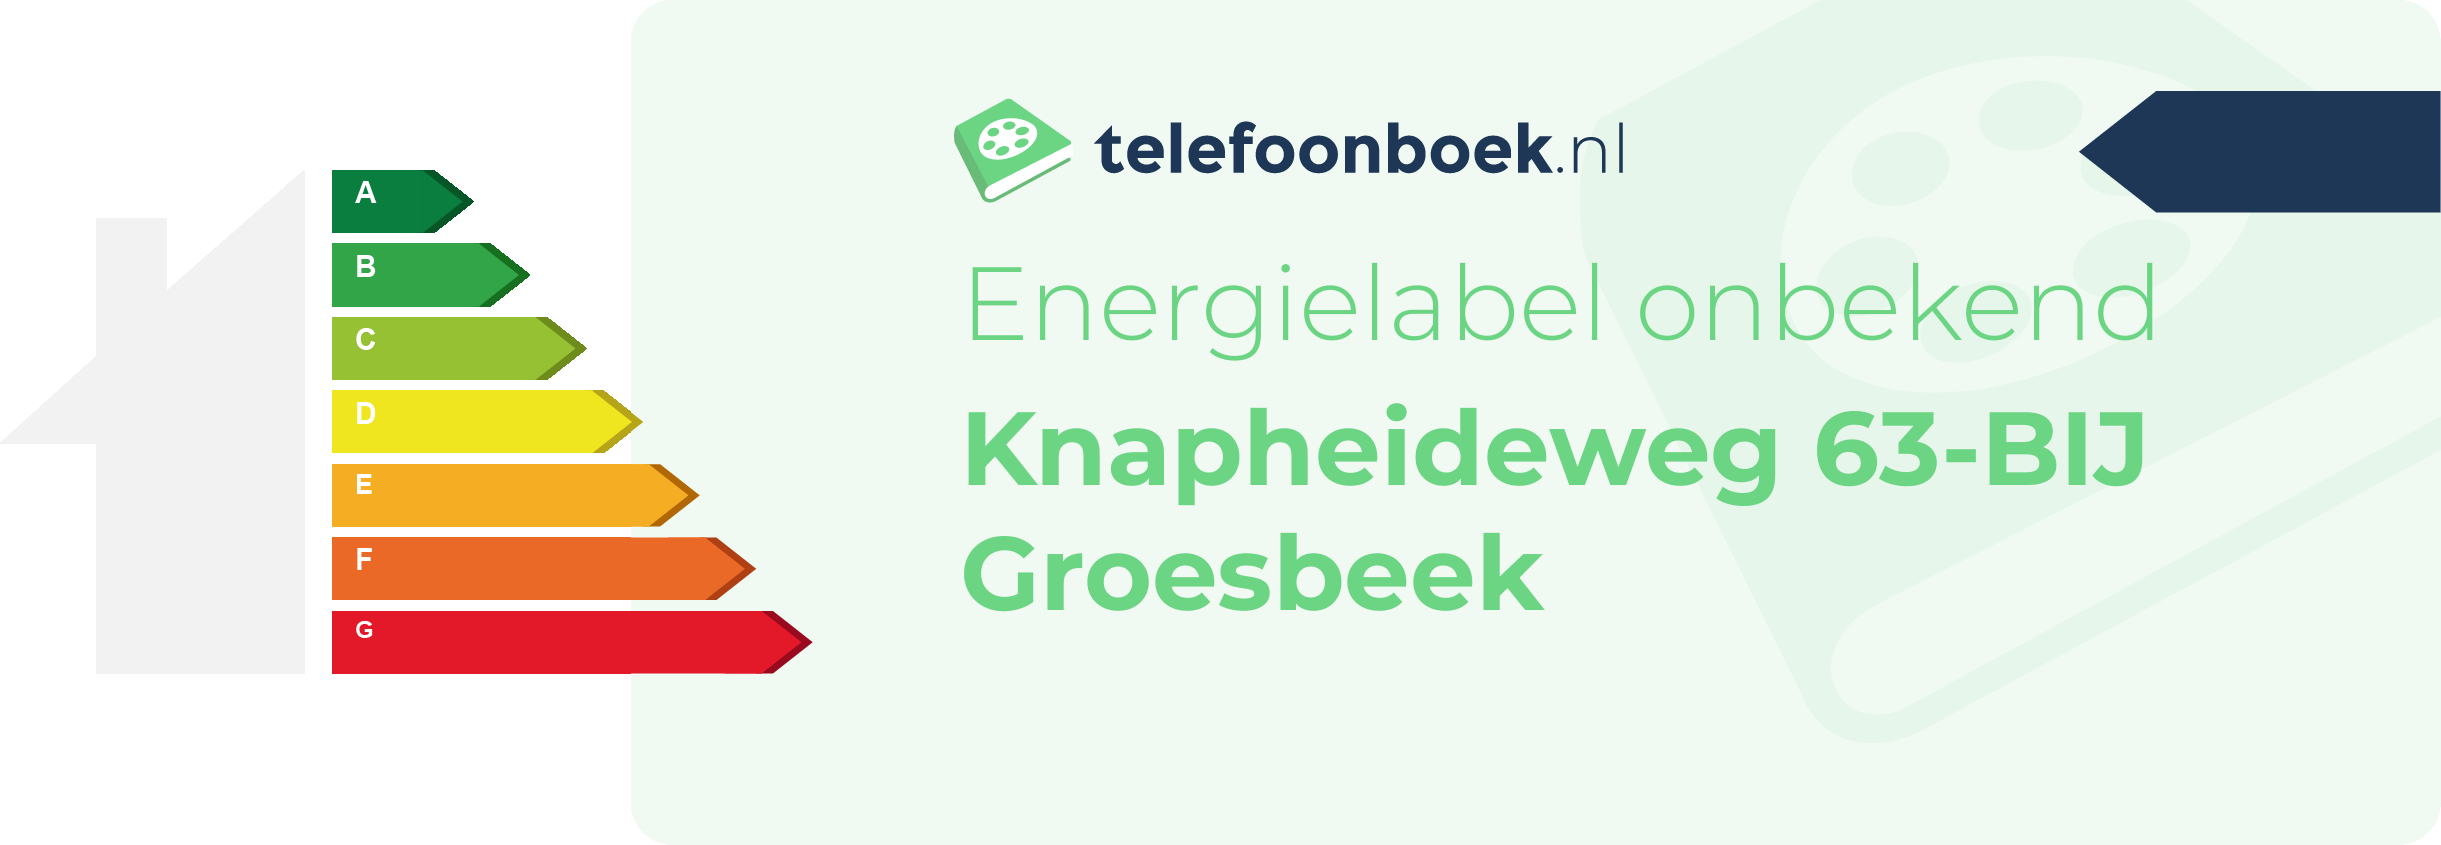 Energielabel Knapheideweg 63-BIJ Groesbeek